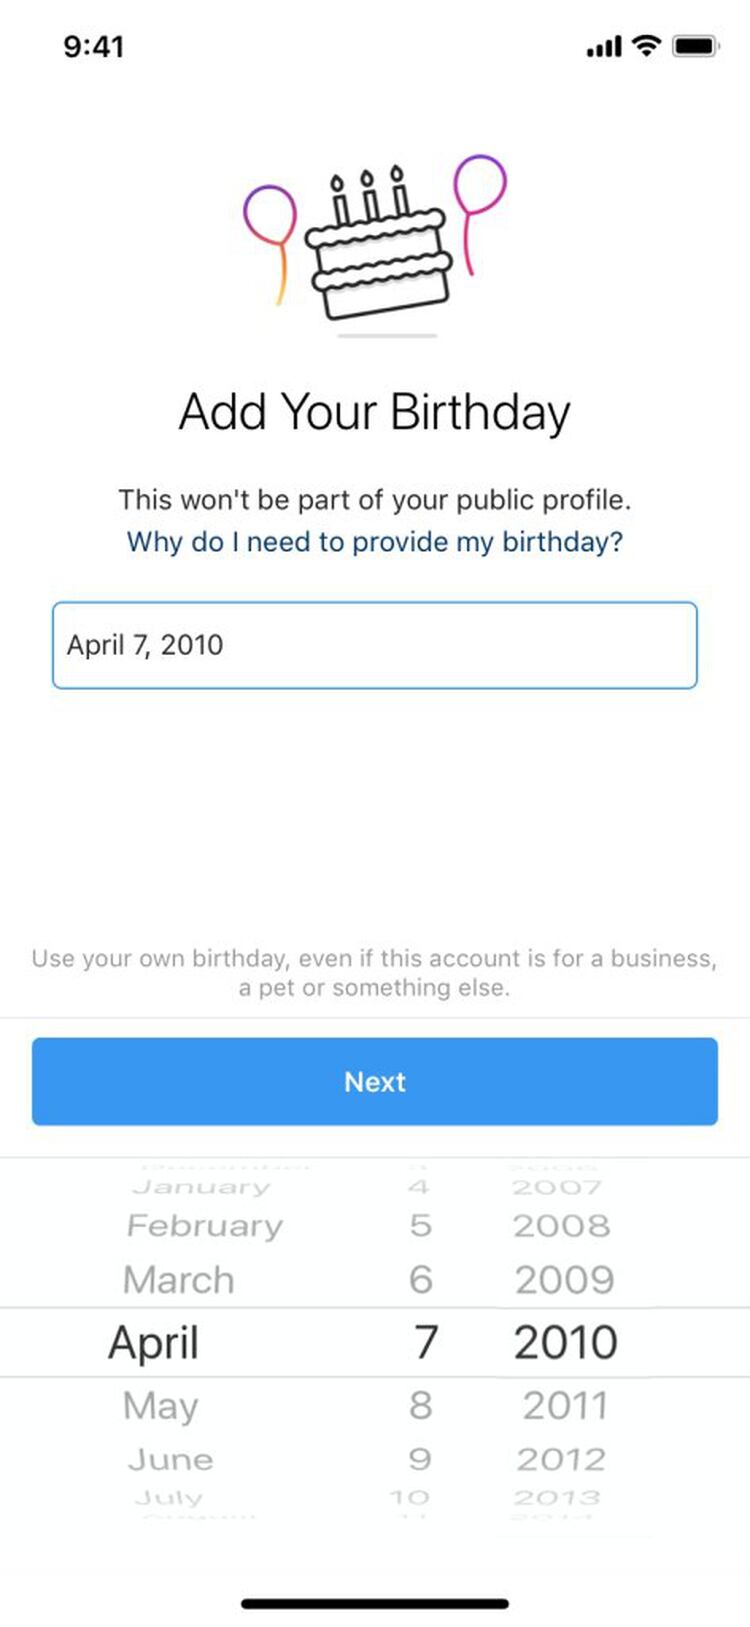 Instagram pedirá la fecha de nacimiento, pero no la verificará. La empresa no descarta que en el futuro una inteligencia artificial sugiera una edad (Foto: Instagram)